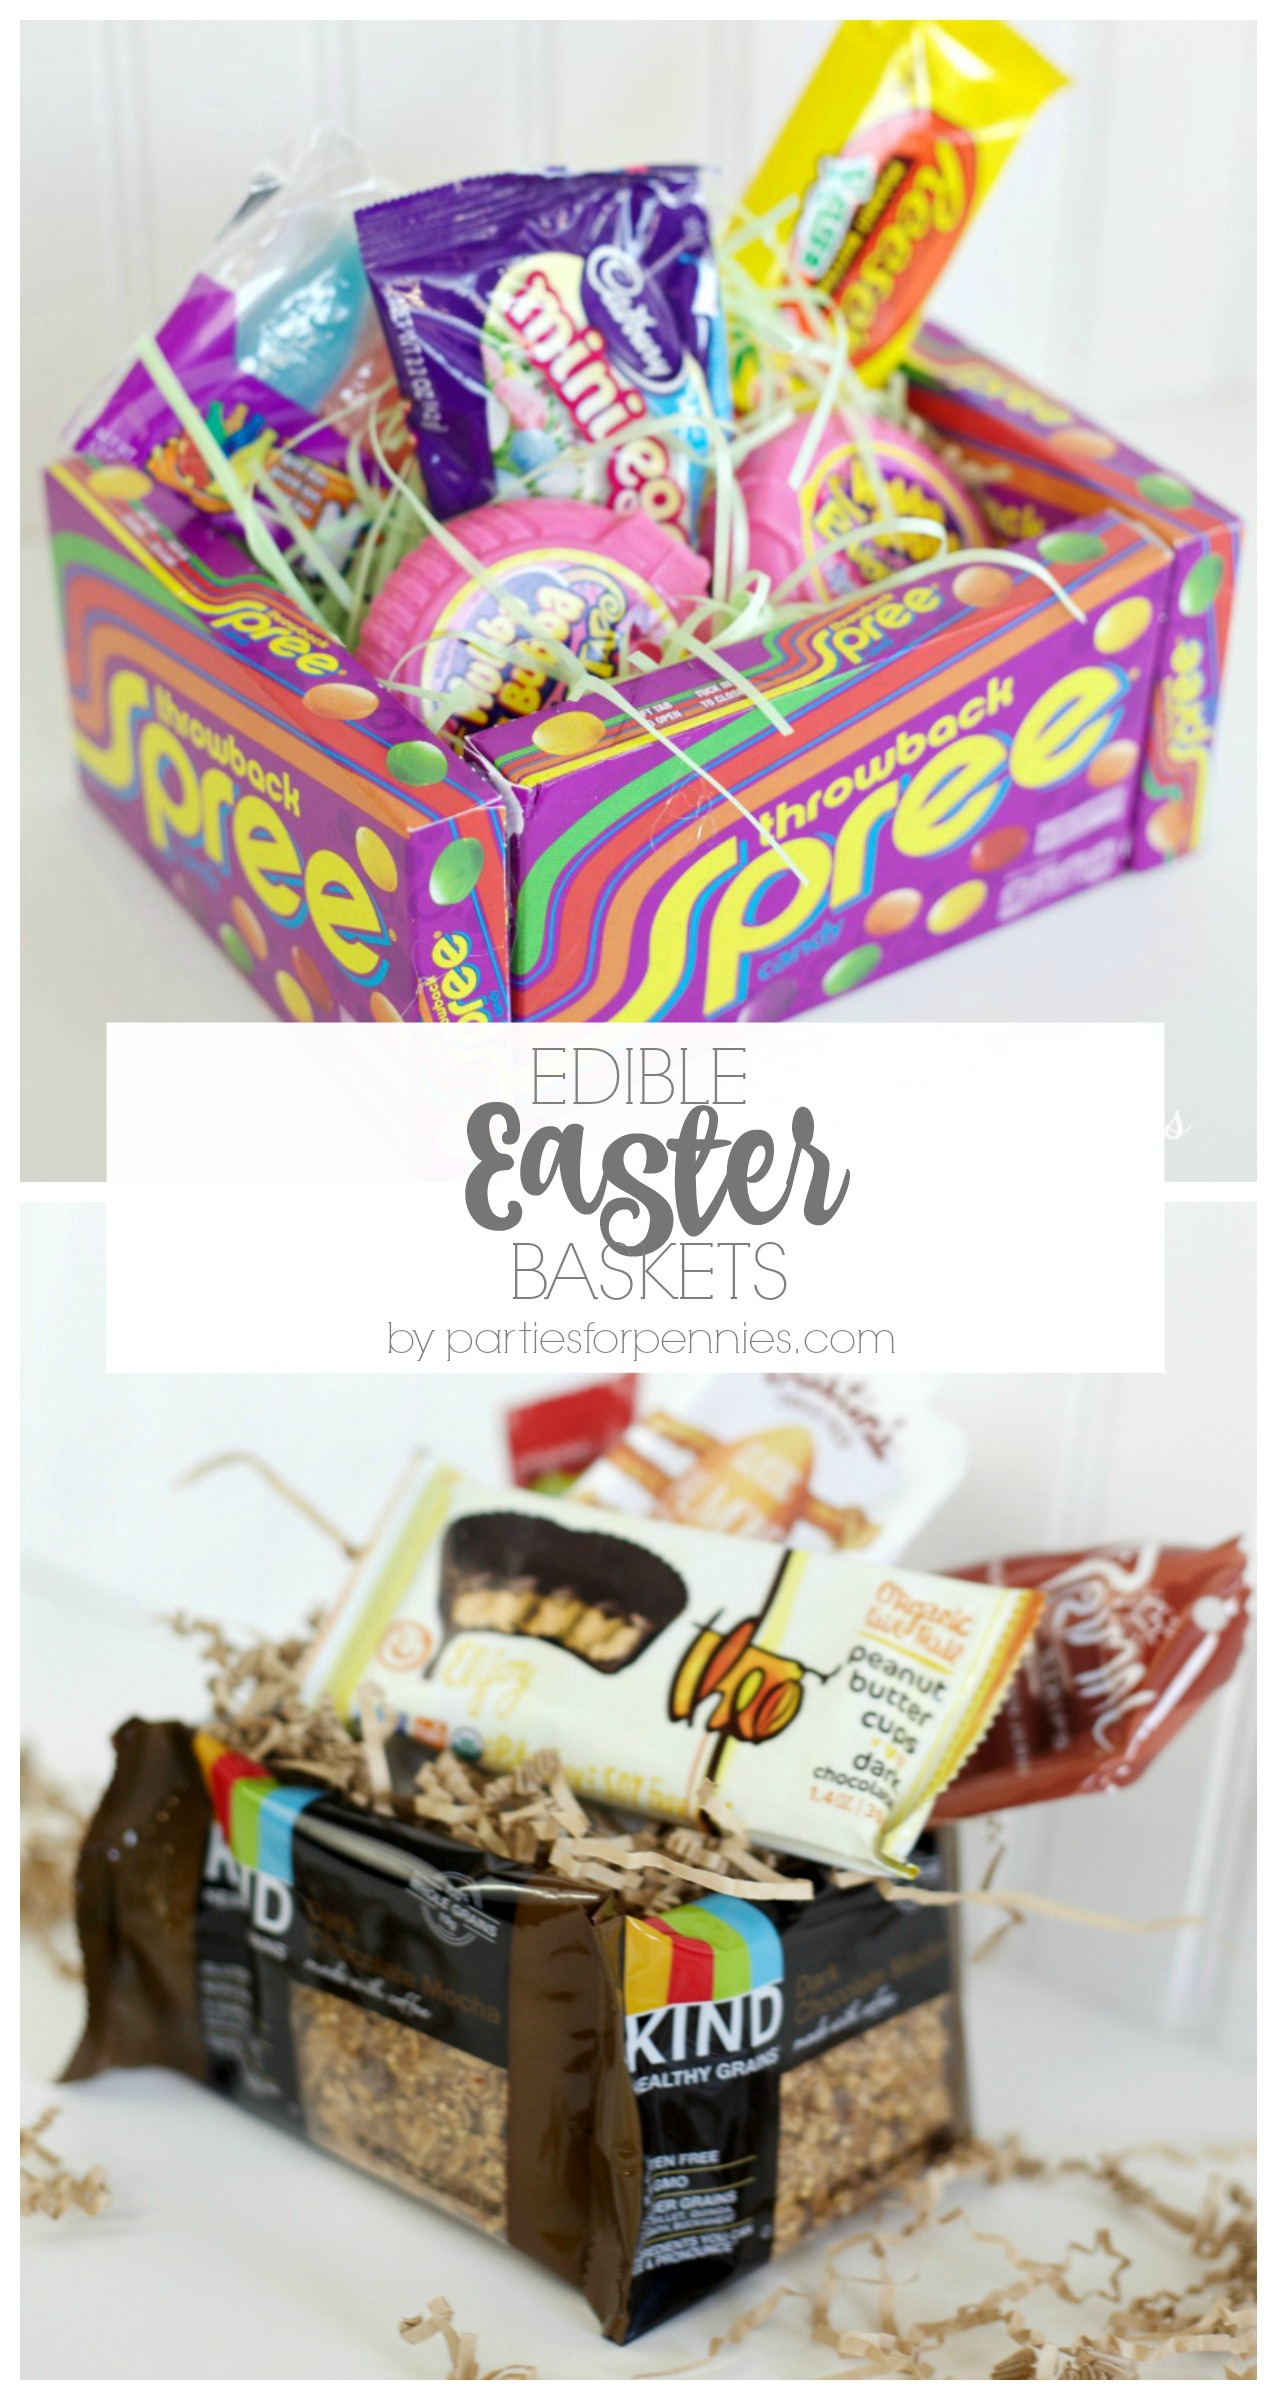 DIY Edible Easter Basket by PartiesforPennies.com | Make a fun & totally edible Easter basket! 